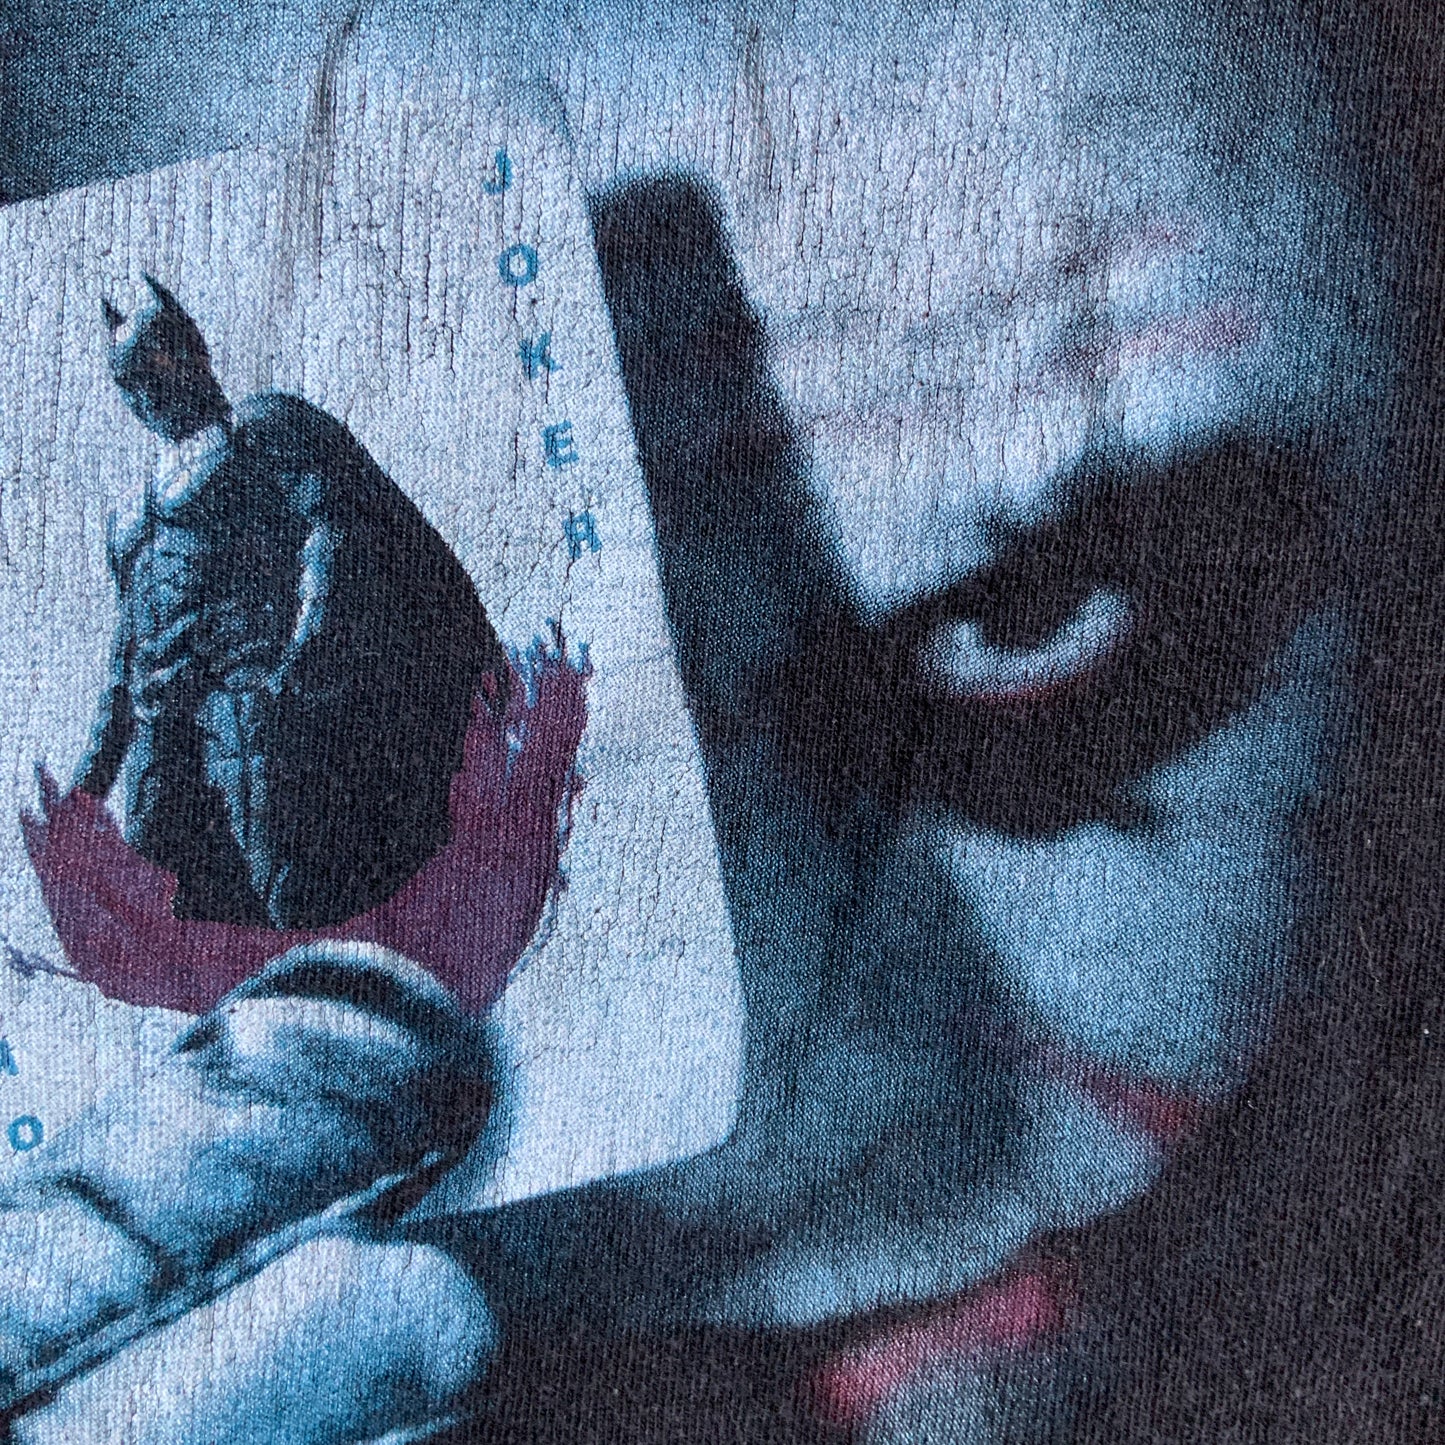 The Dark Knight "Joker" Shirt - S